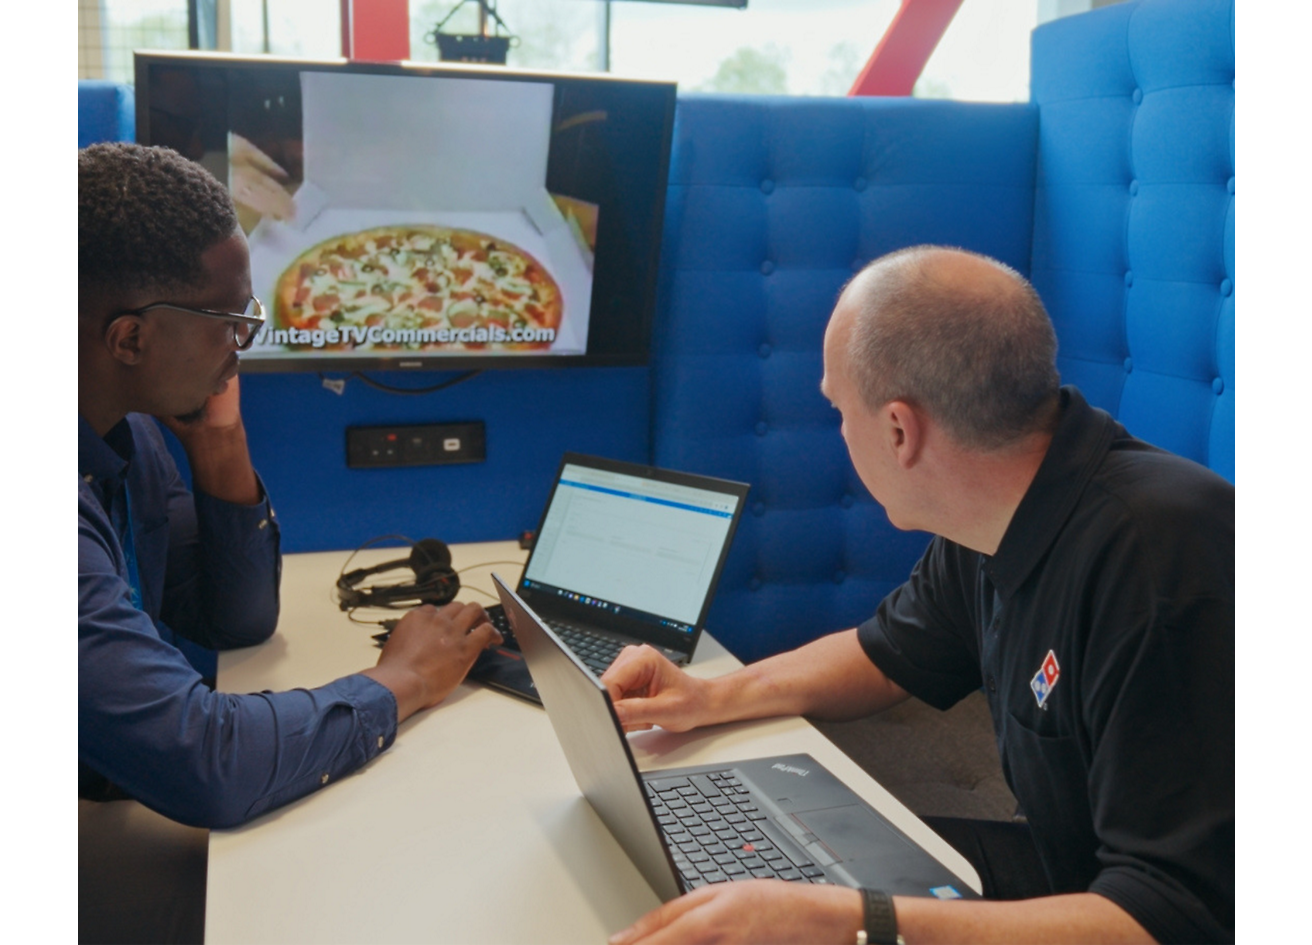 Duas pessoas sentadas com um computador portátil e a falar sobre a Dominos pizza